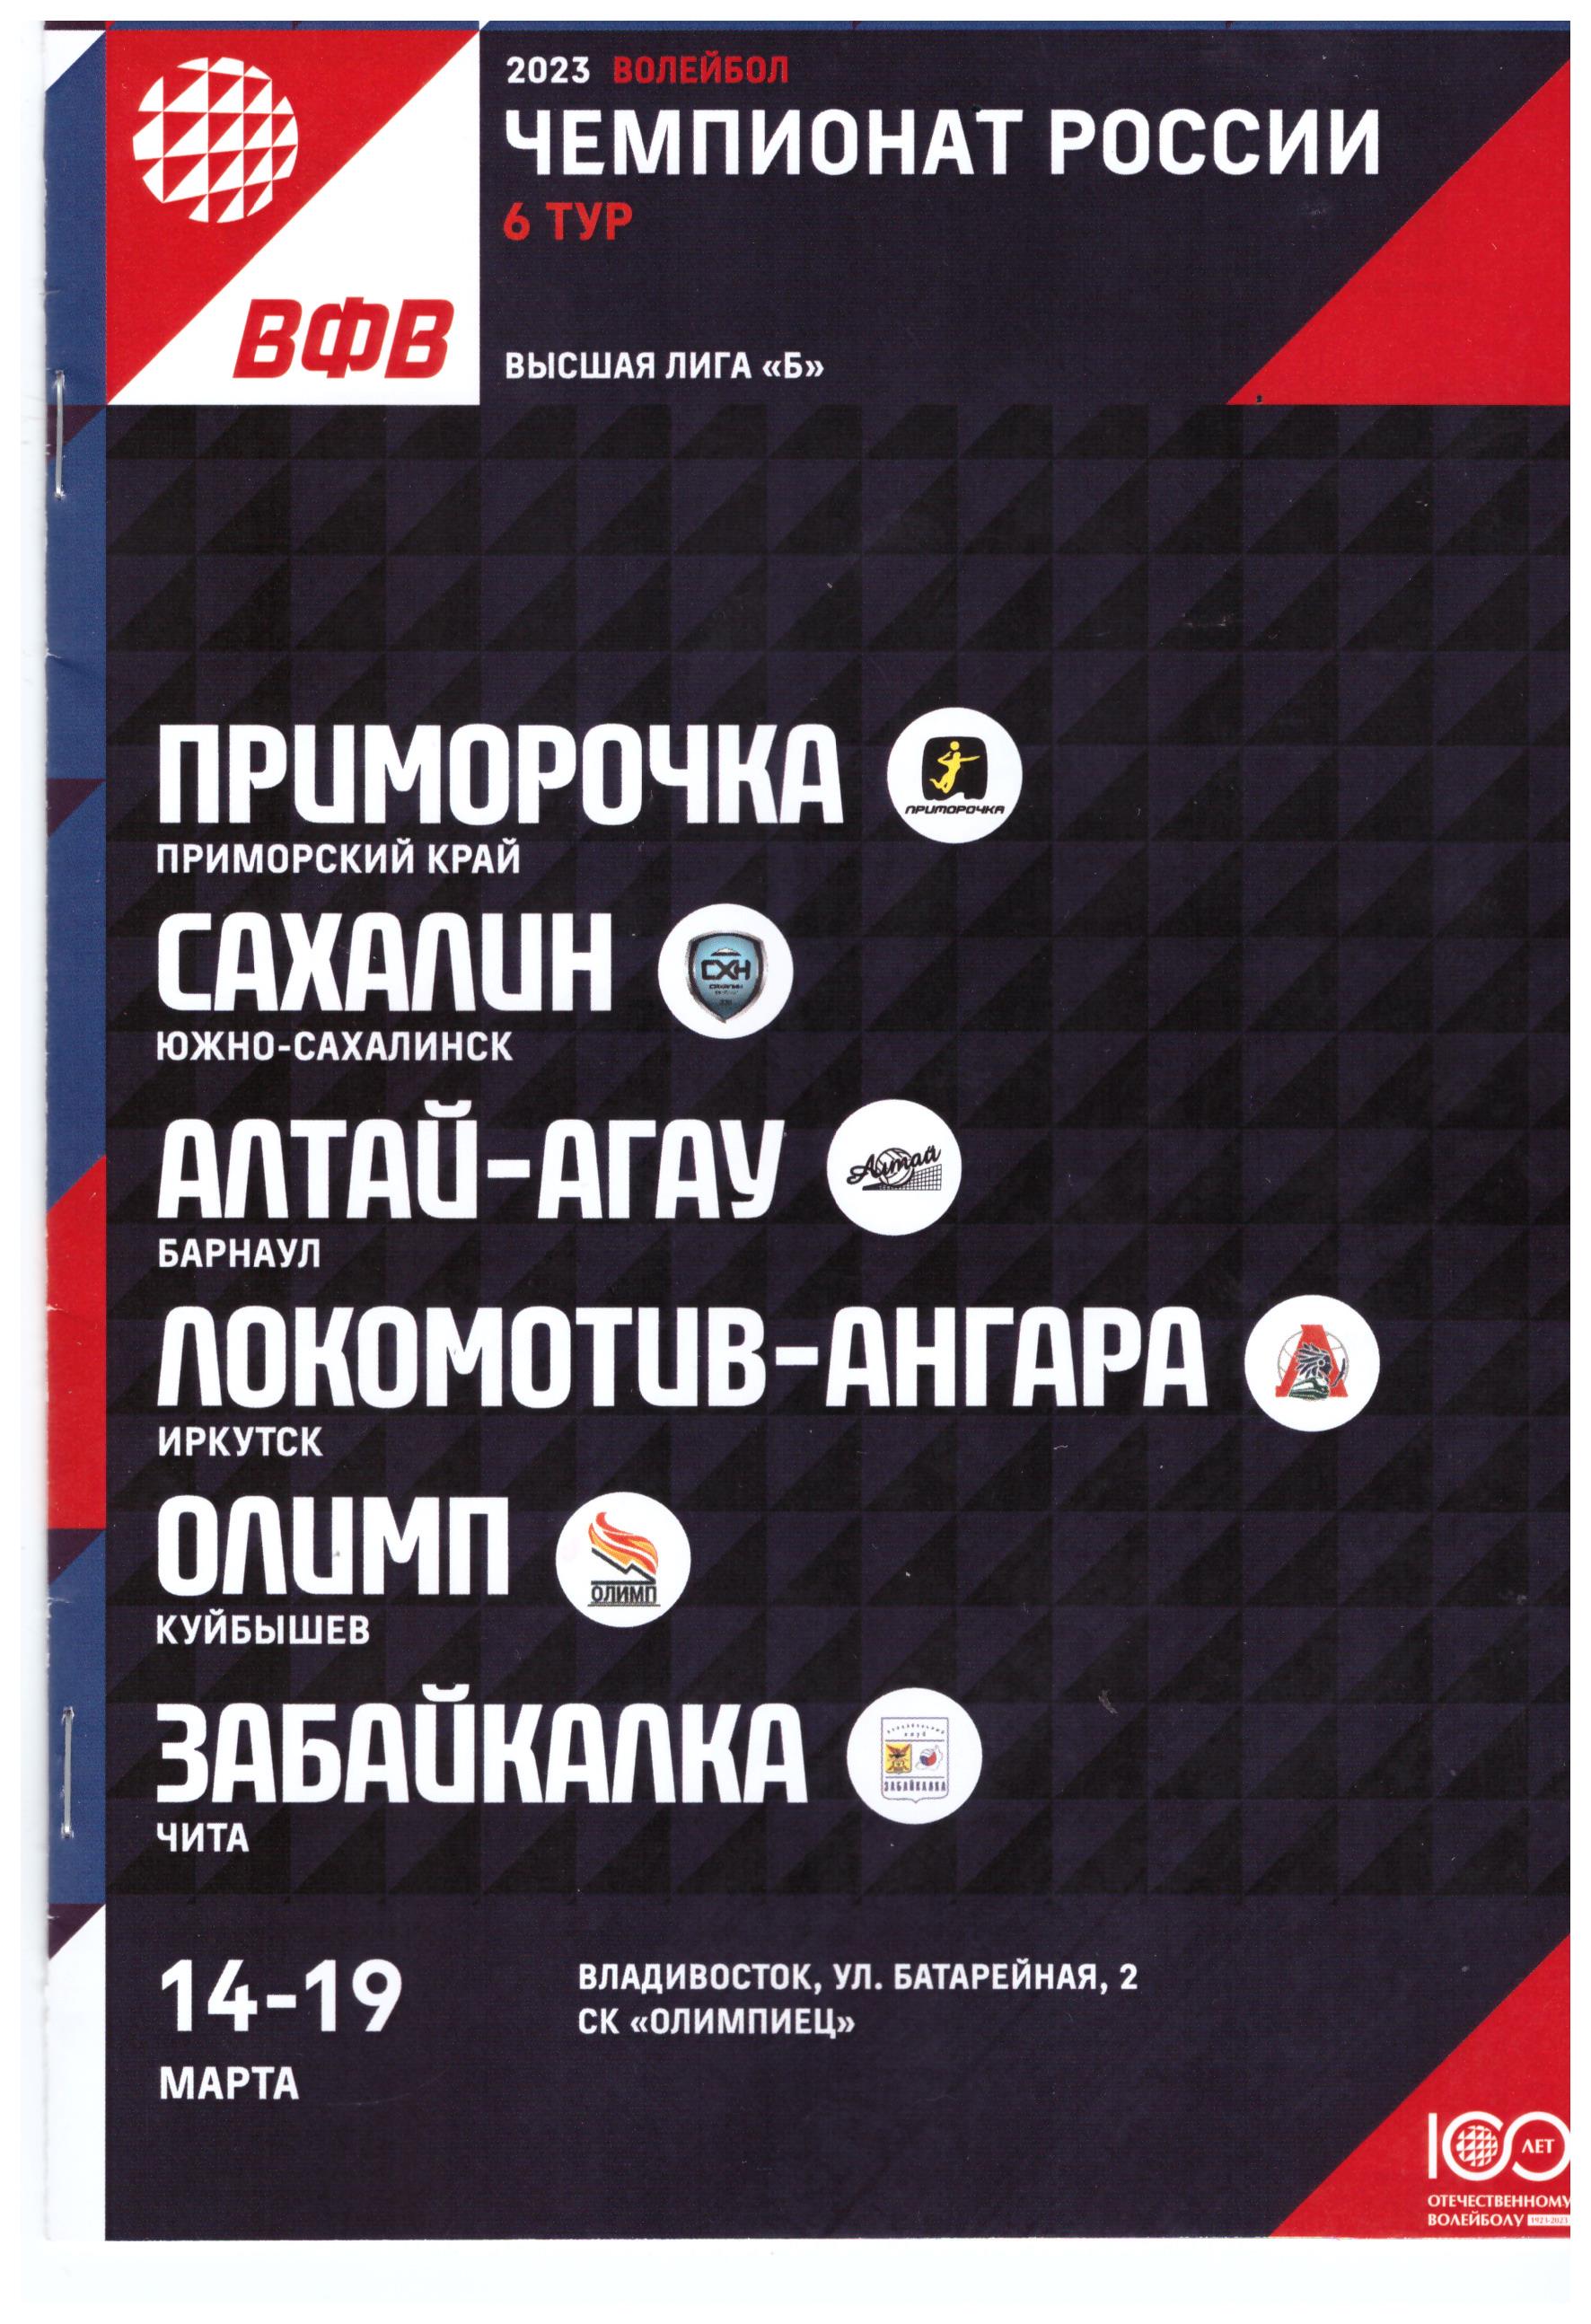 Тур высшей лиги Б во Владивостоке (14-19.03.2023)